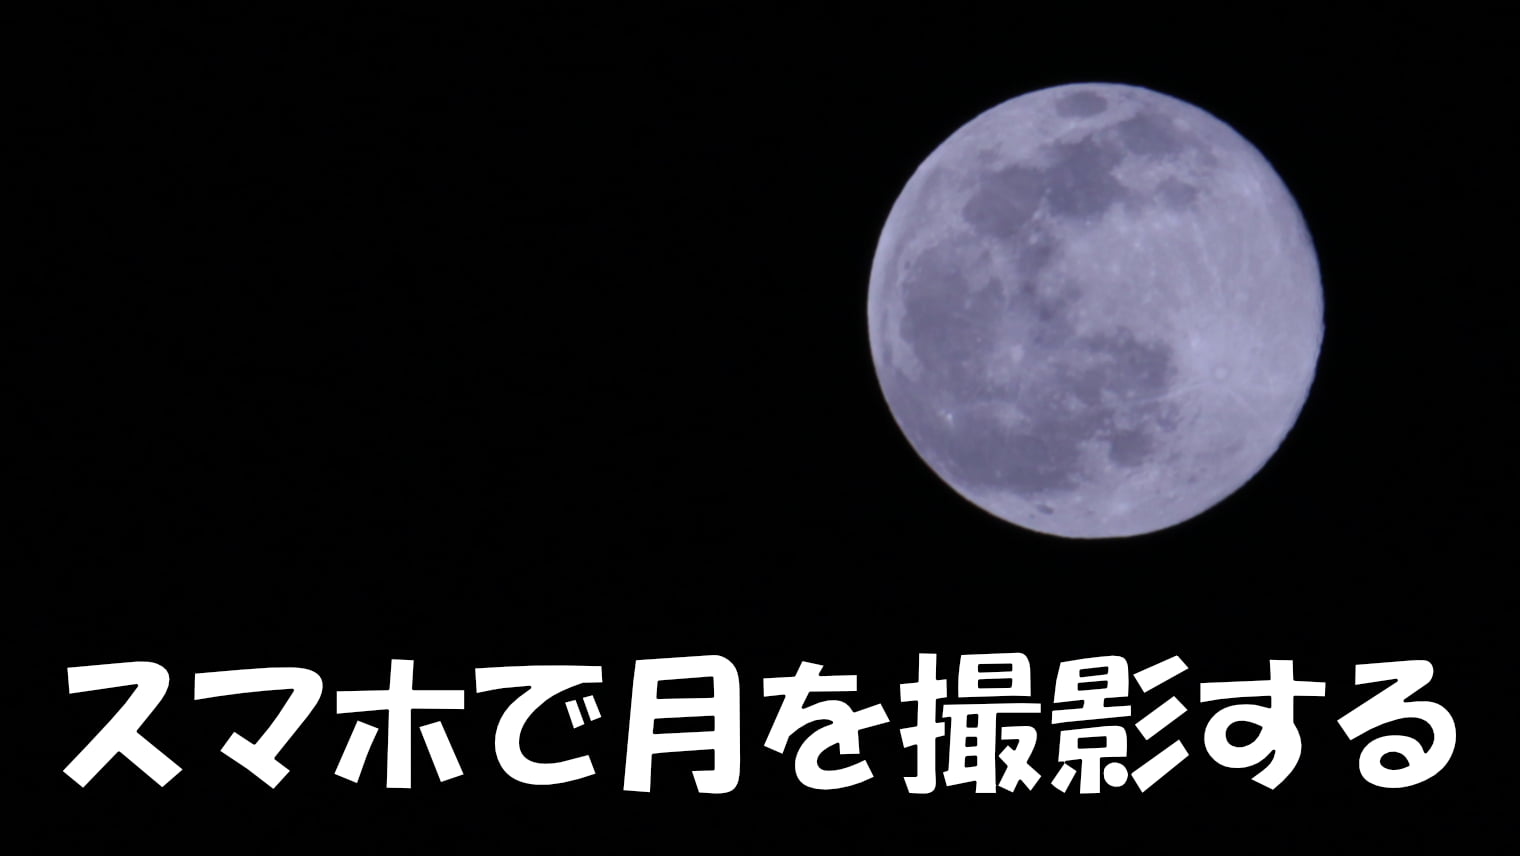 スマホで月をキレイに撮影する方法【スマホ用望遠レンズ必須】